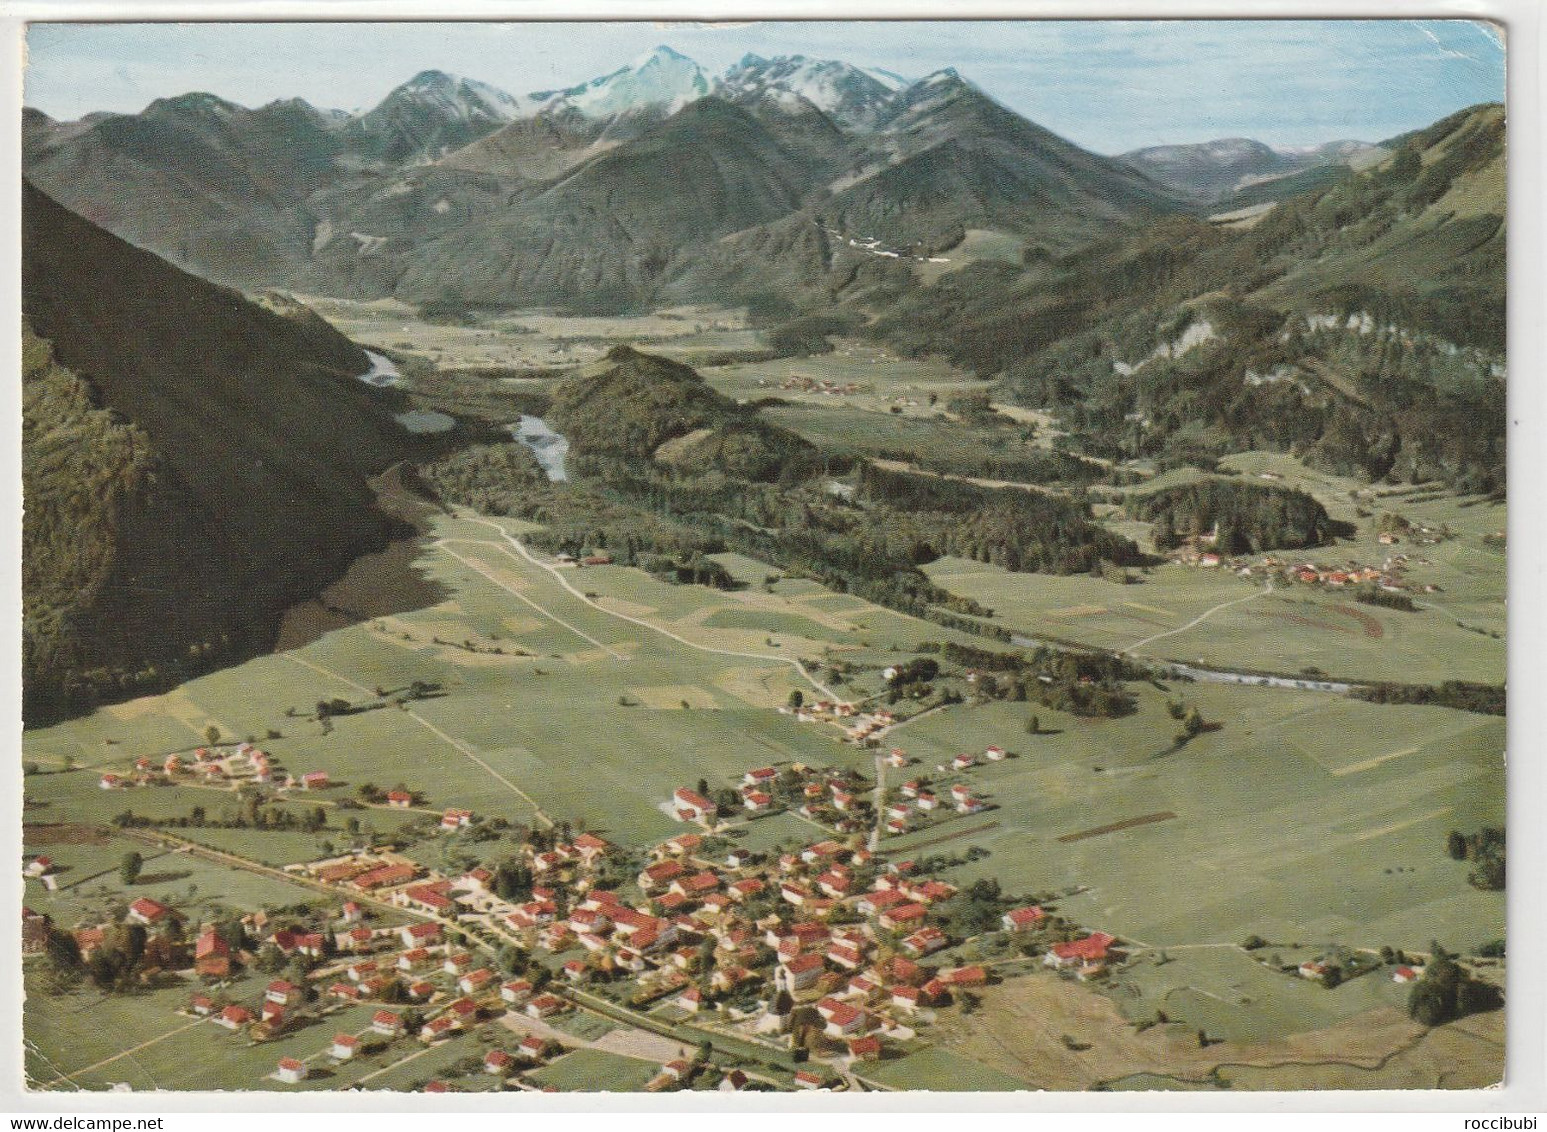 Unterwössen, Obb. 1963 - Chiemgauer Alpen